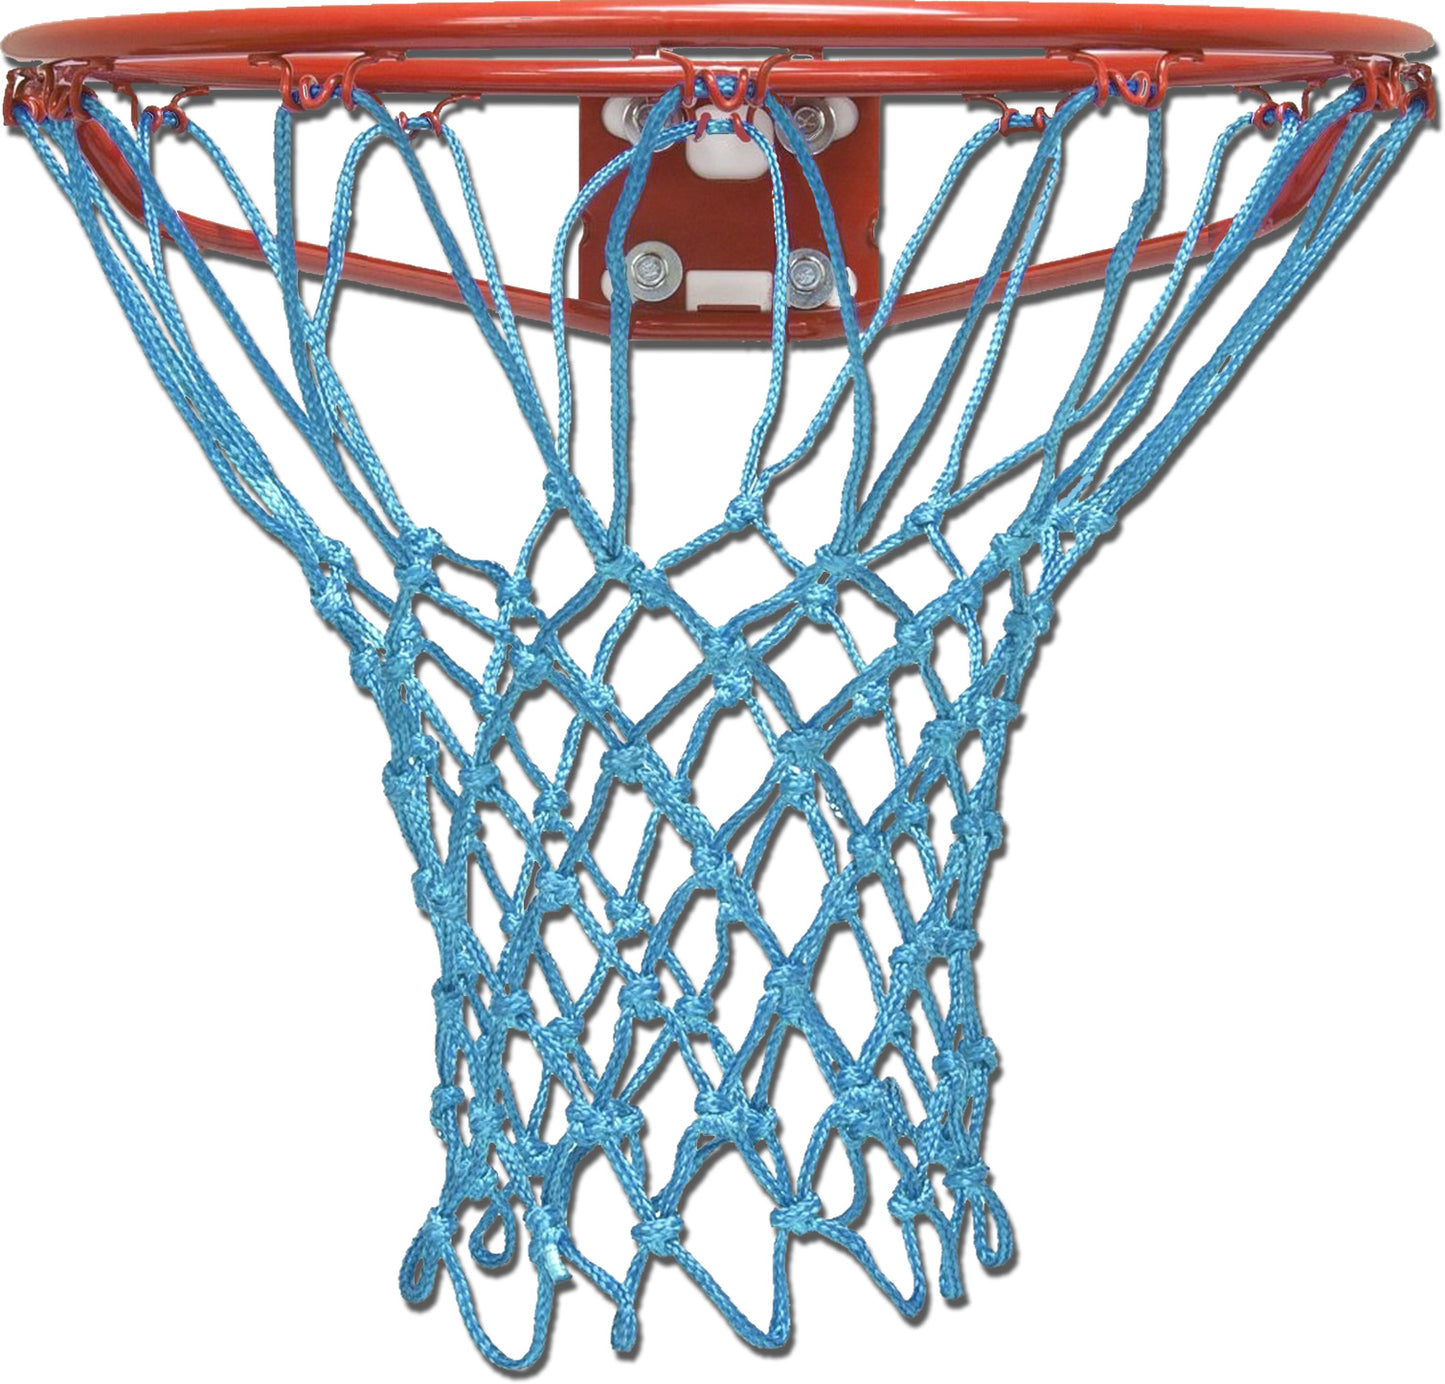 Light Baby Blue Basketball Hoop Net